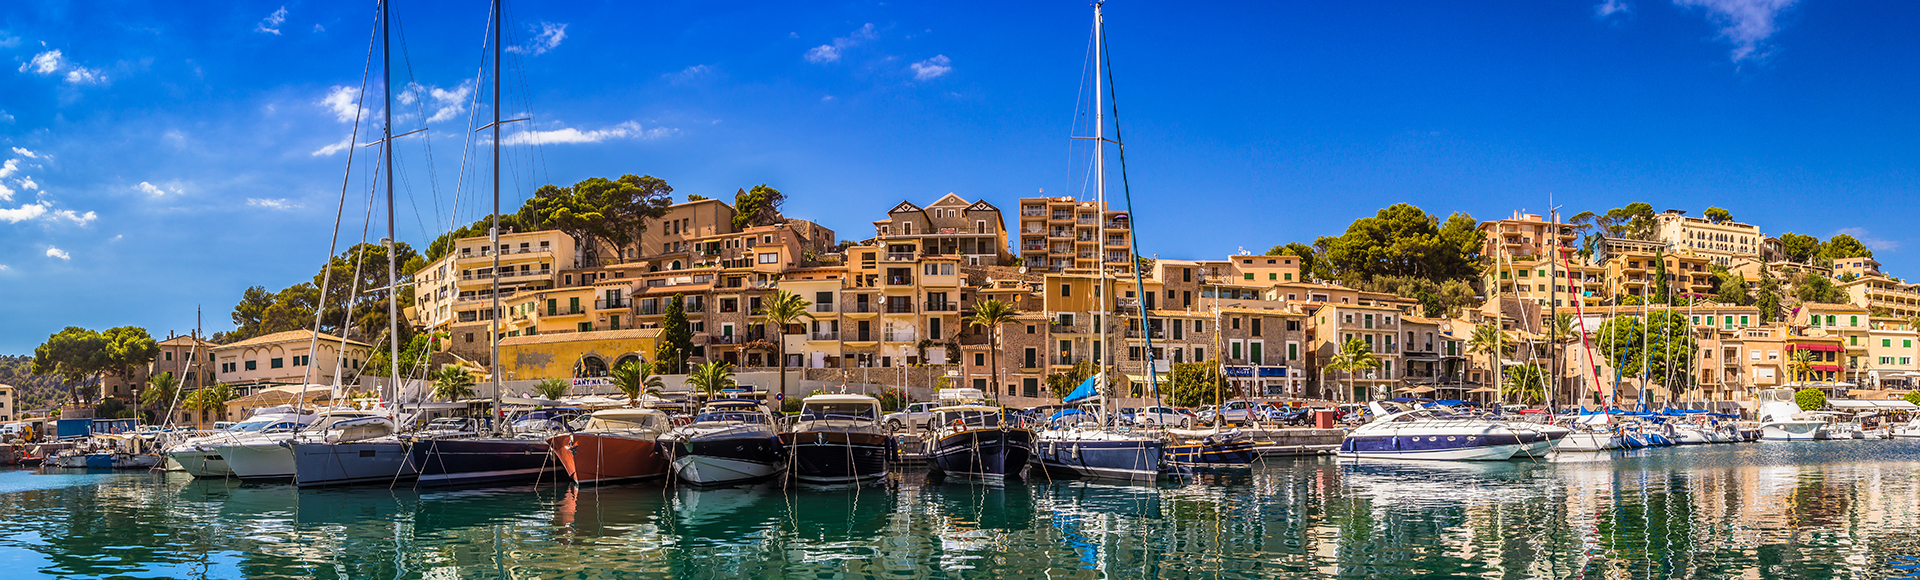 Immobilienmakler für Auslandsimmobilien - Ferienhaus kaufen in Mallorca, Kroatien